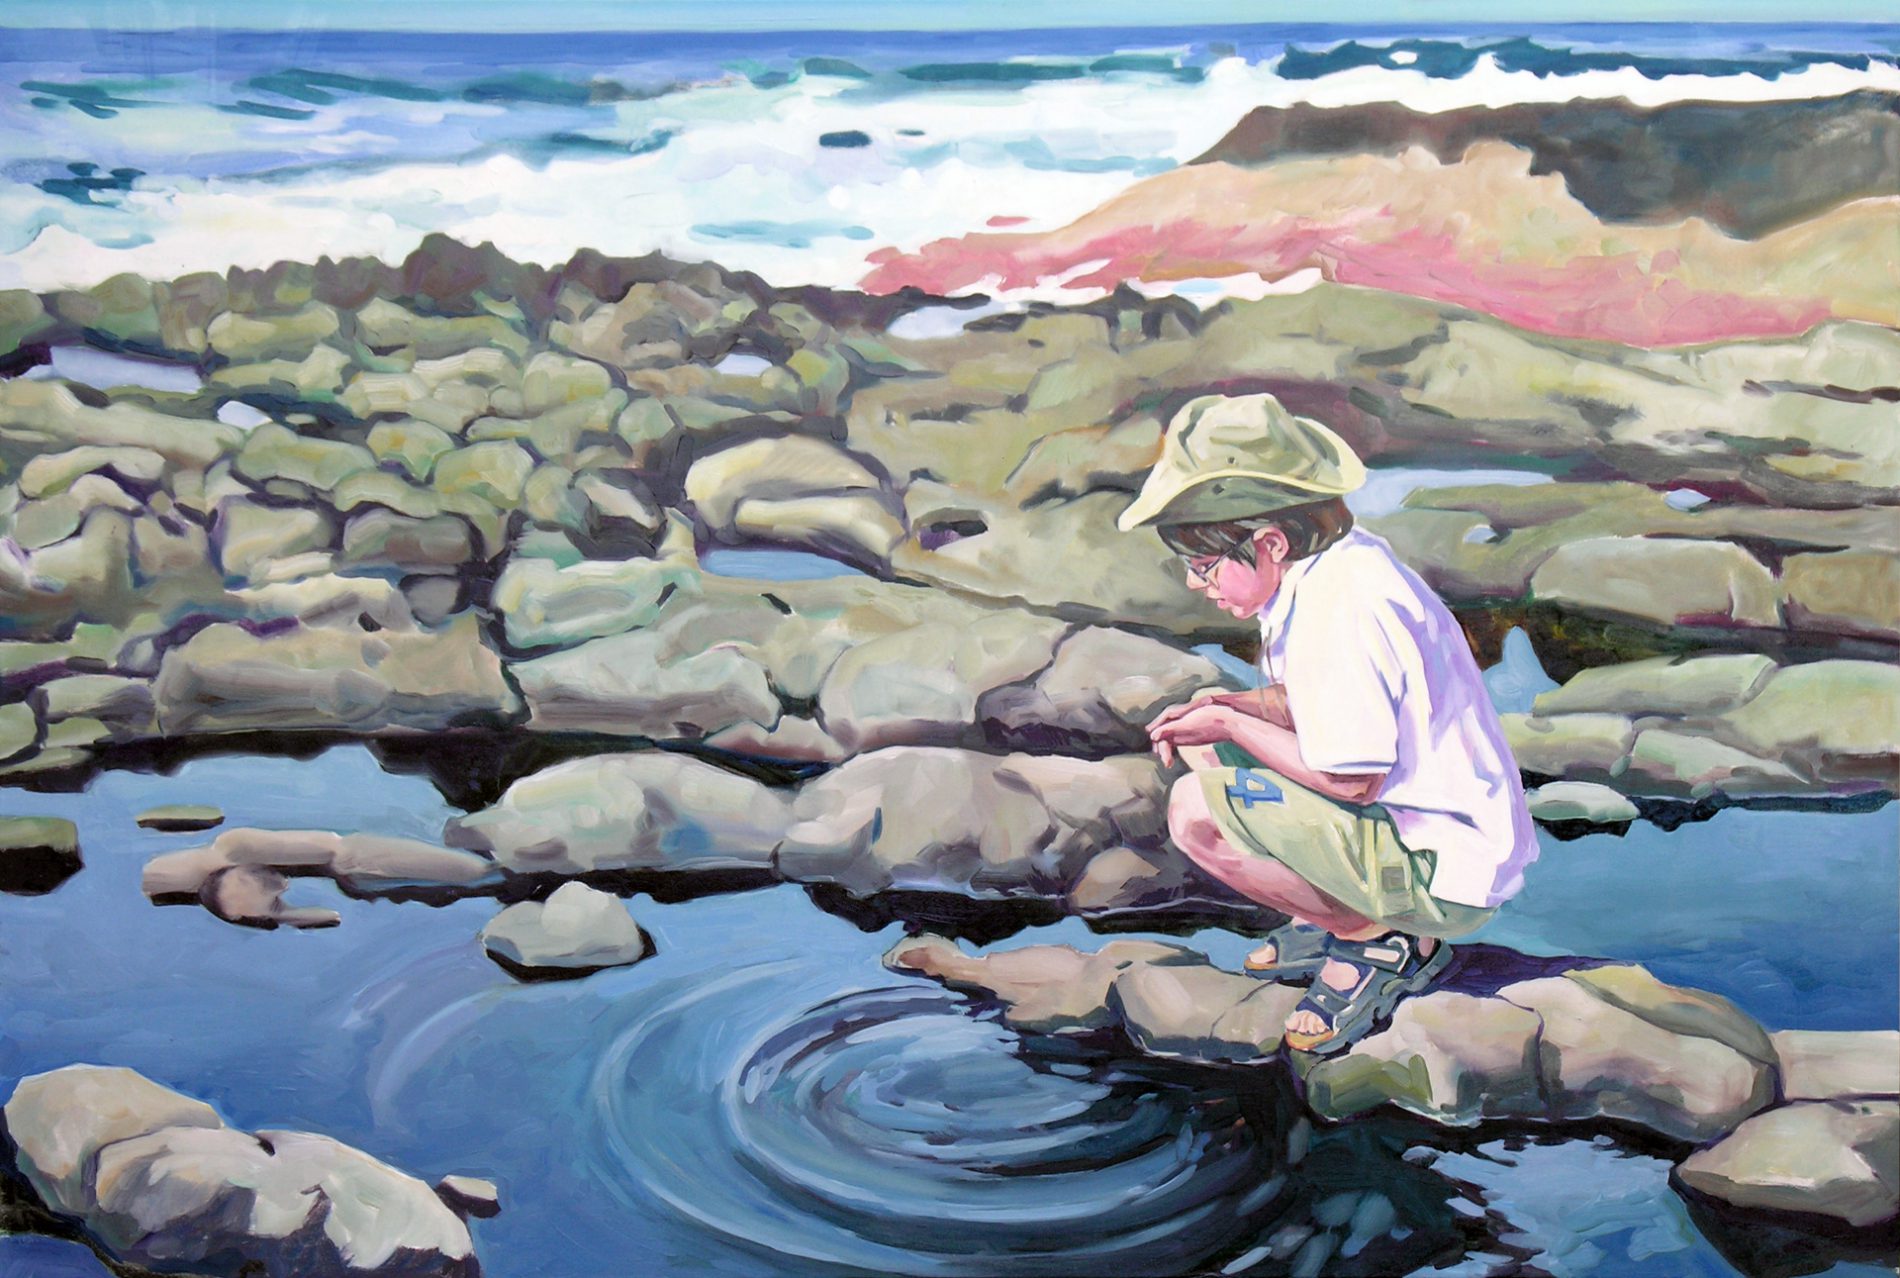 Gemälde von Julia Belot: Wasserringe, Öl auf Leinwand, 120 cm x 180 cm, 2007, La Palma, Kanarische Inseln